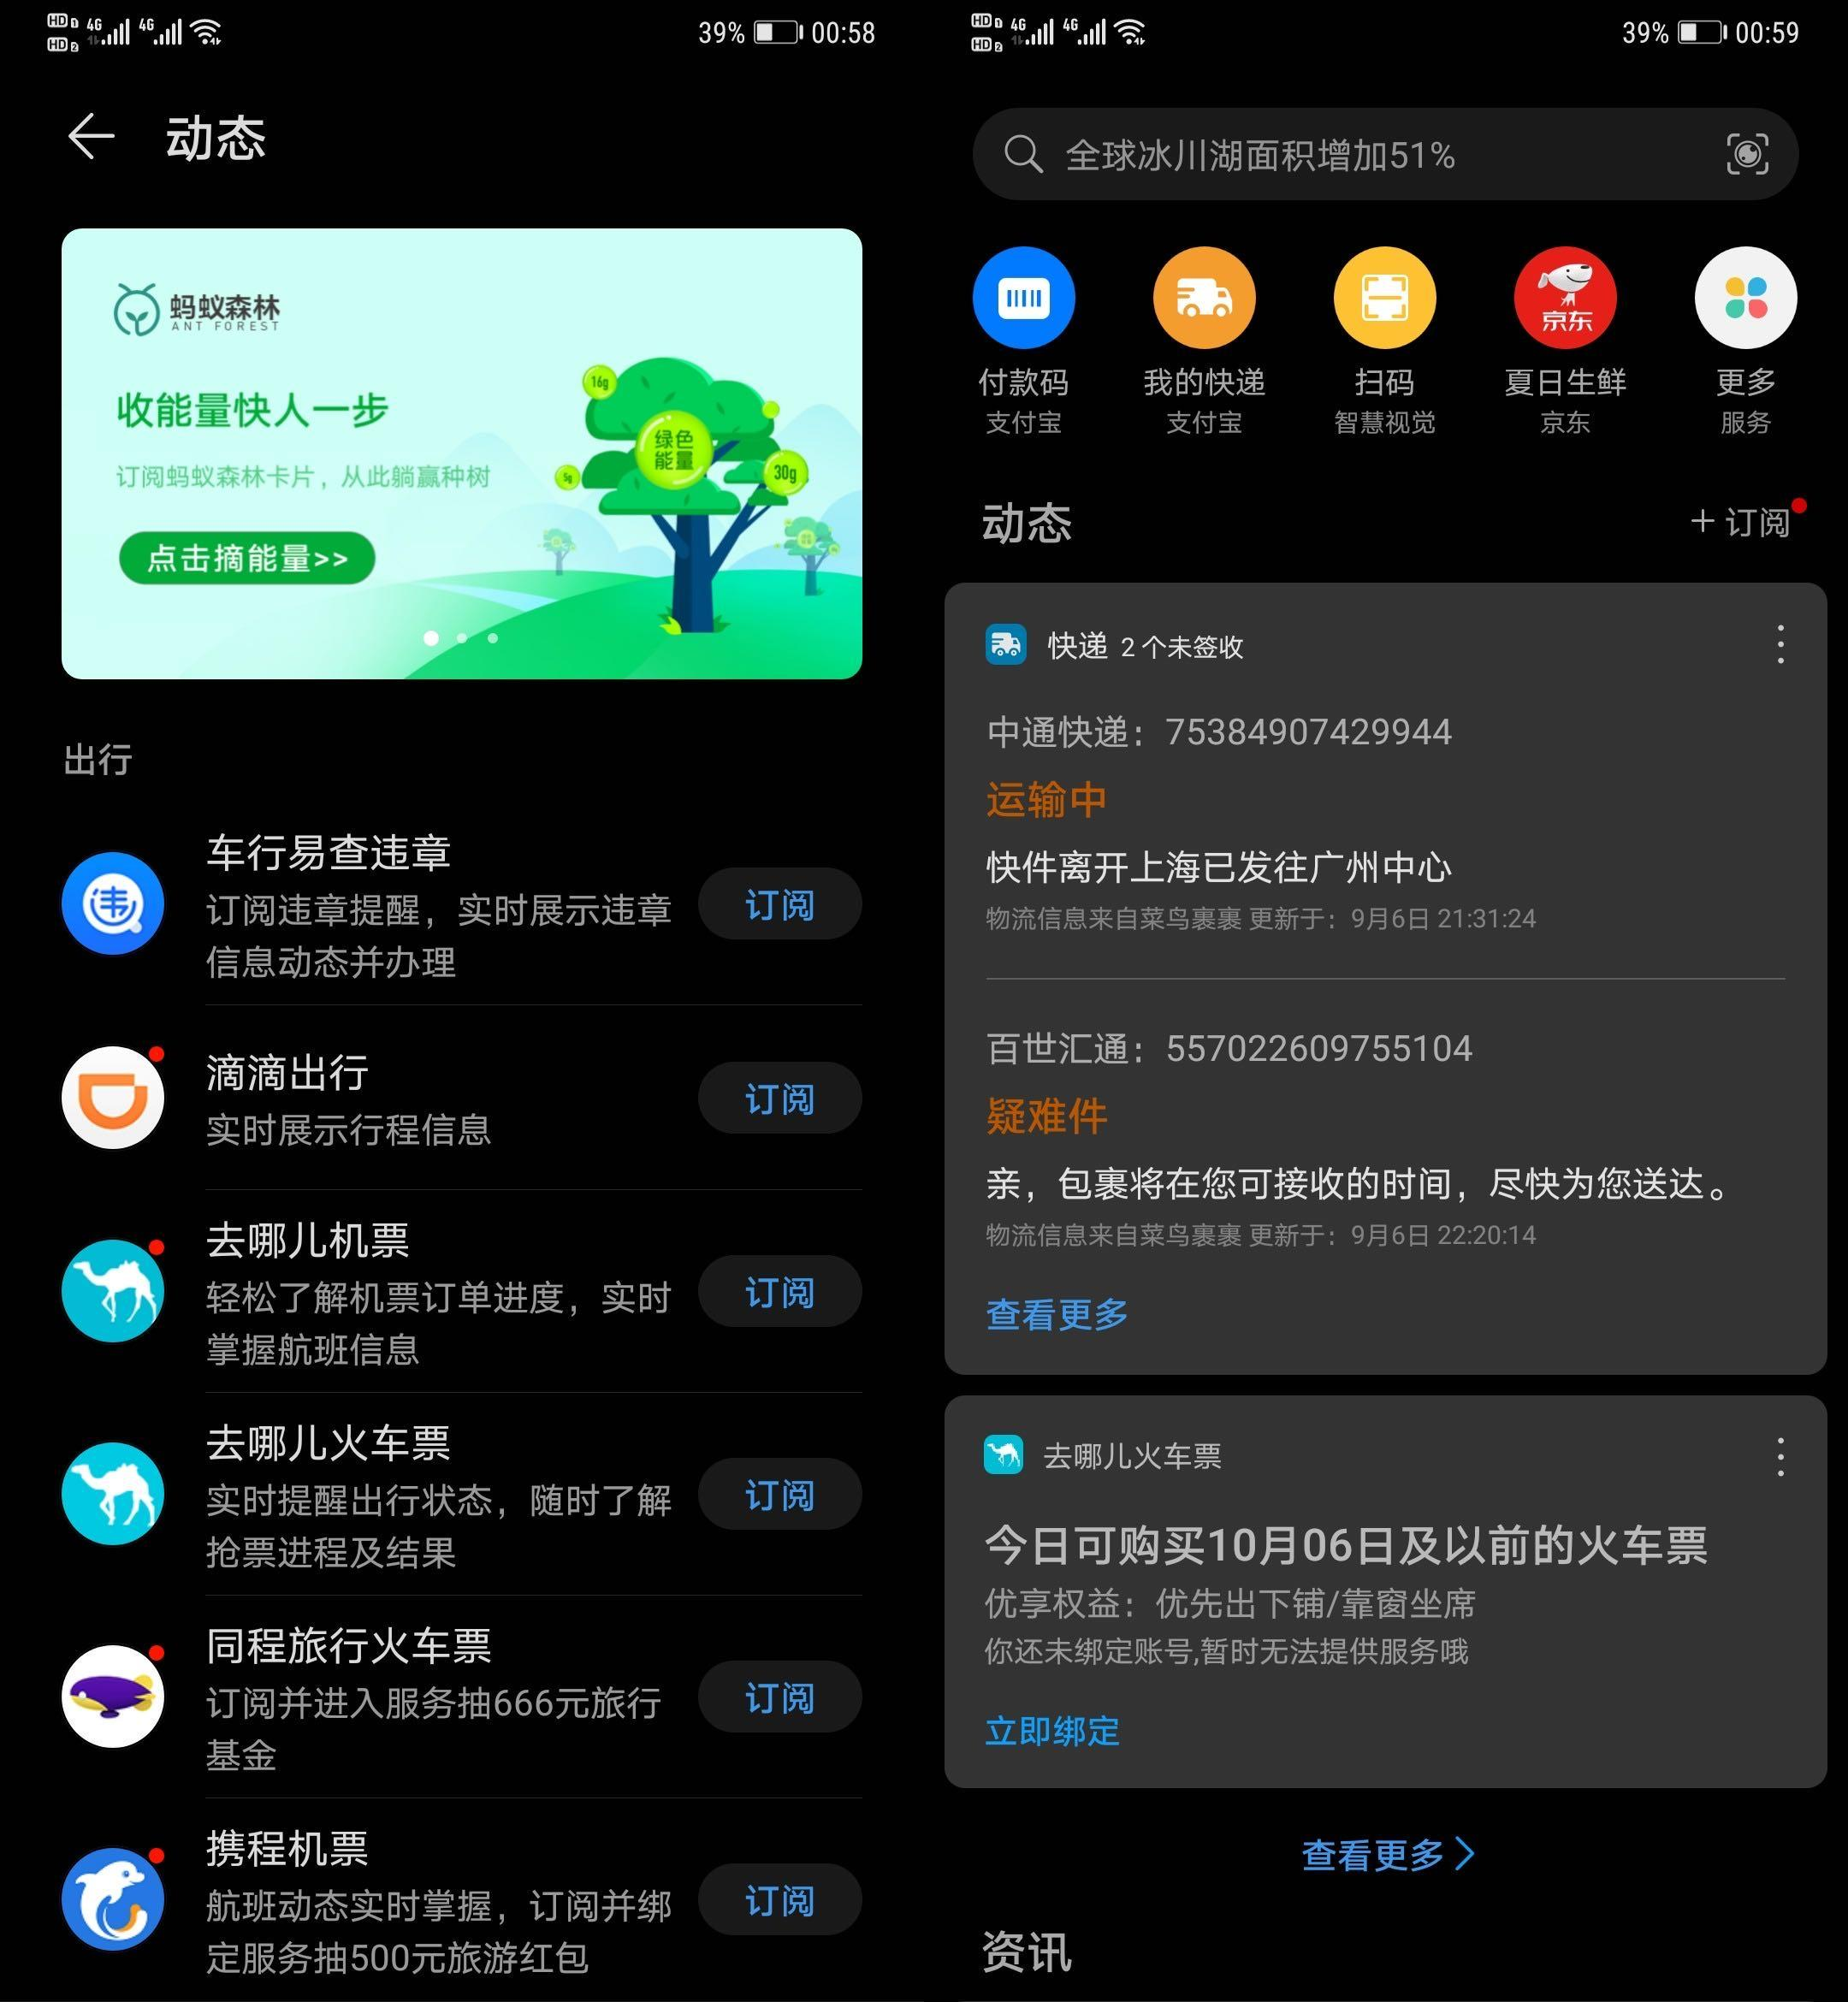 zhinengzhushou - Solleva il telefono Huawei e scorri verso destra per conoscere le funzionalità dello smartphone